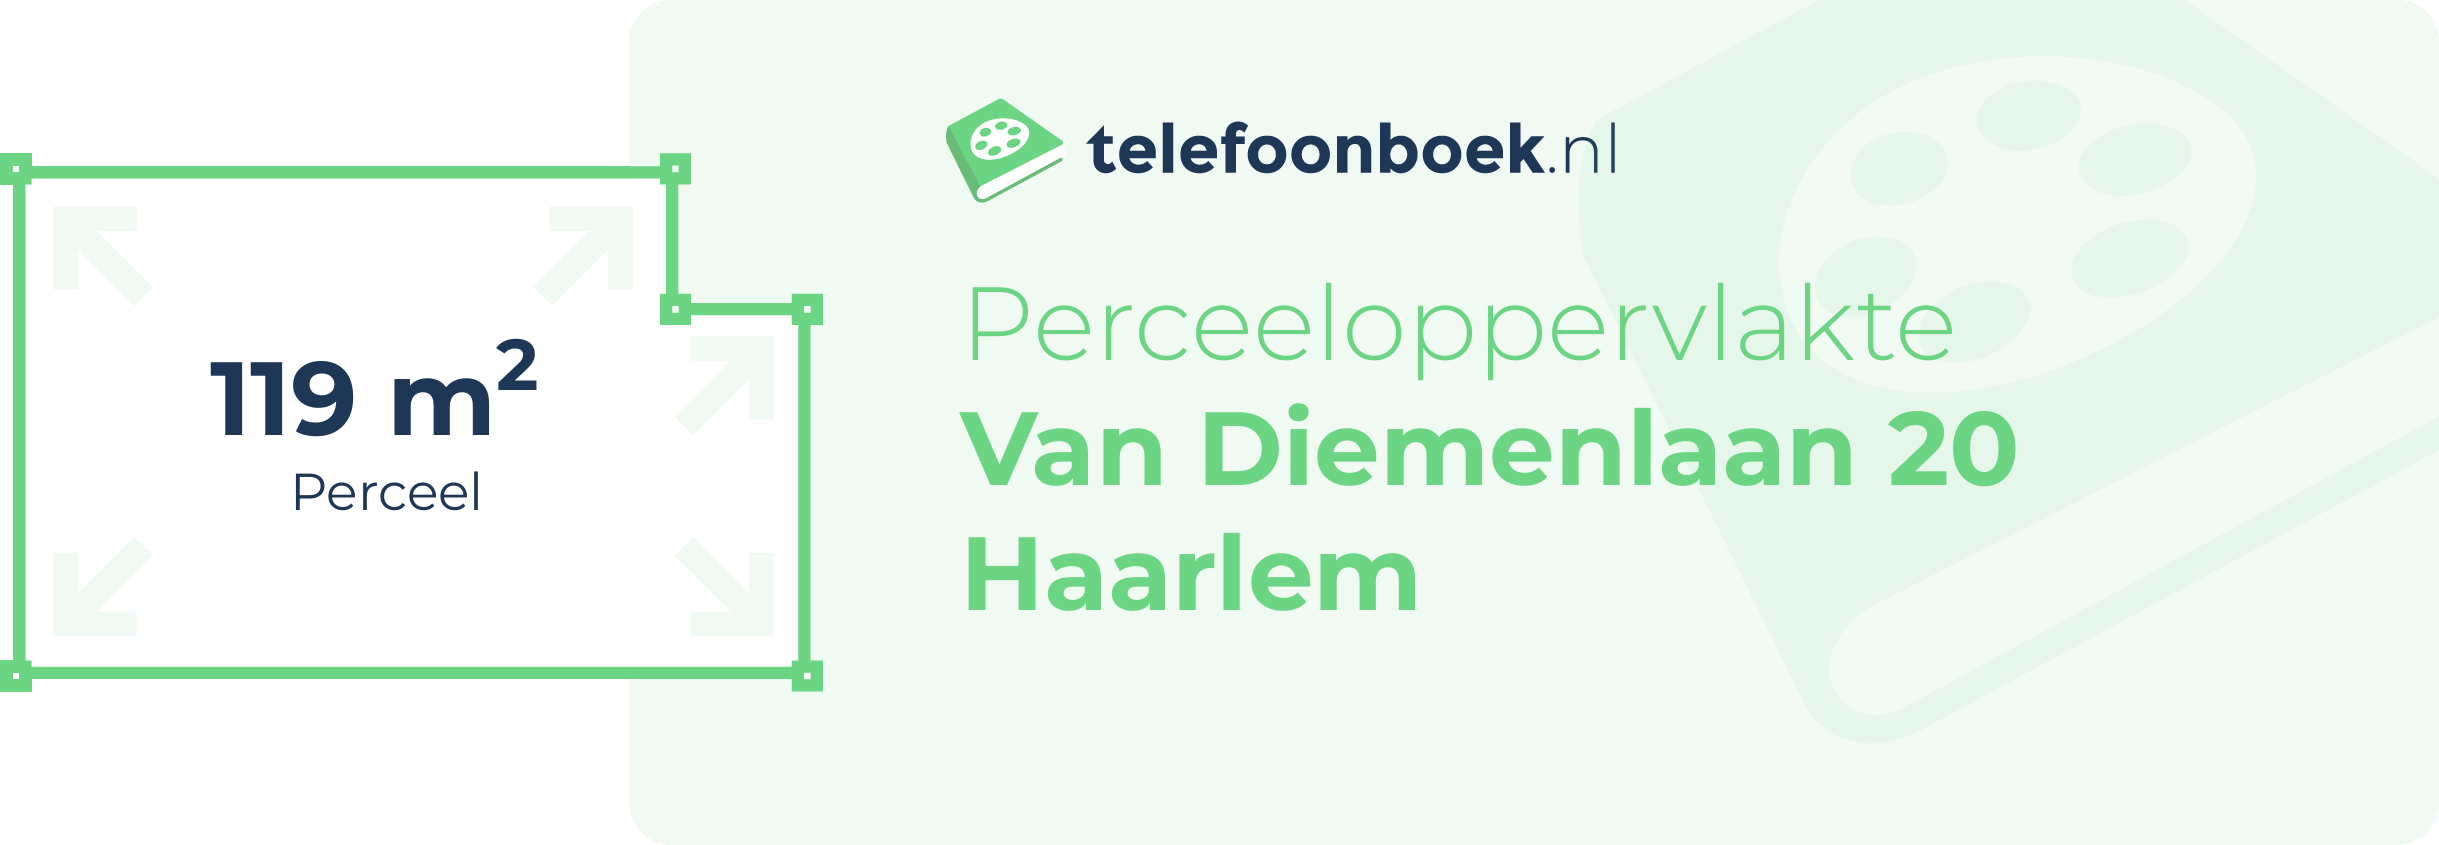 Perceeloppervlakte Van Diemenlaan 20 Haarlem